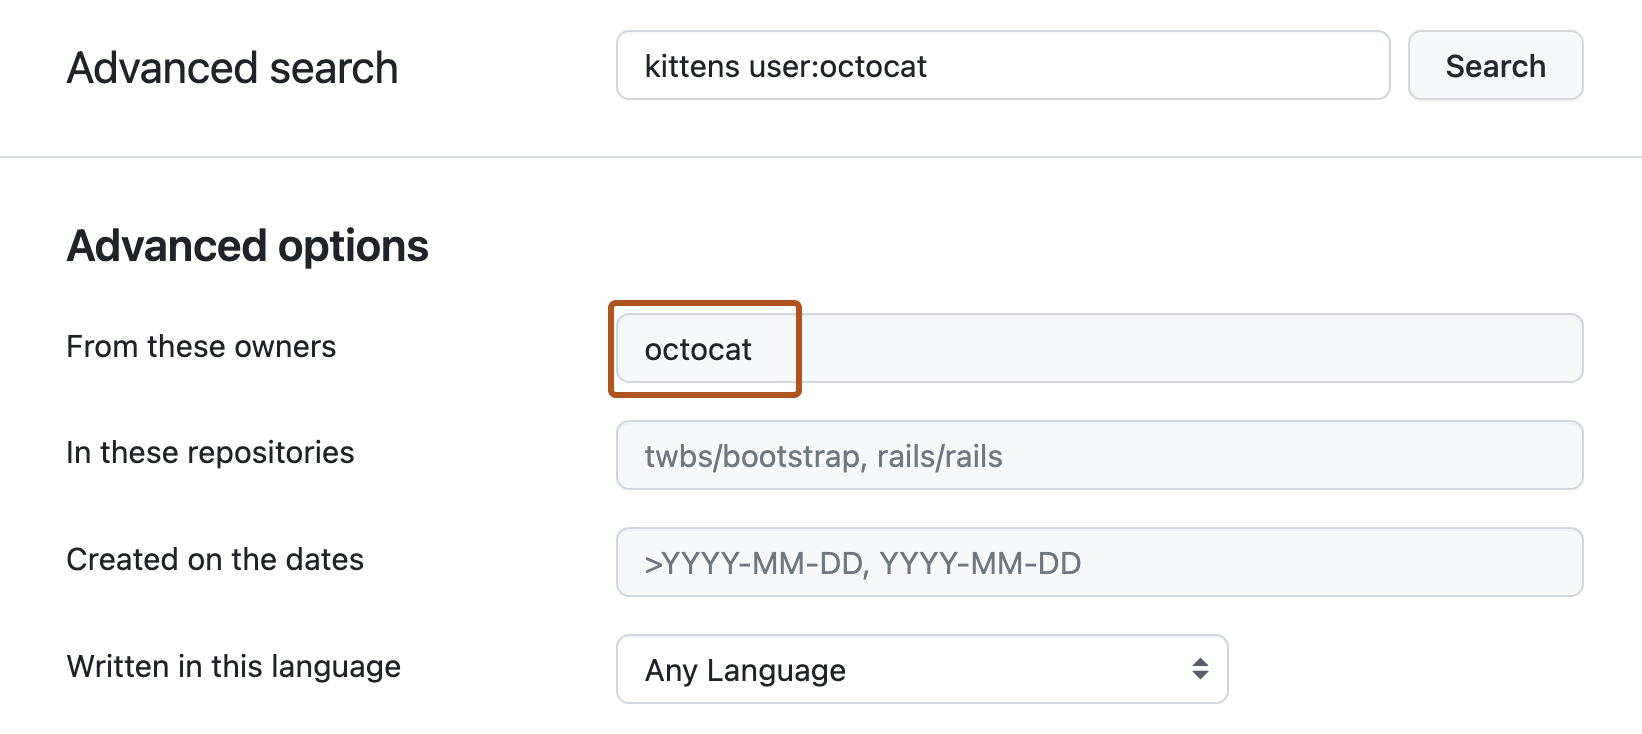 “高级搜索”页的屏幕截图。 顶部搜索栏填充了查询“kittens user:octocat”，在下面的“高级选项”部分下，“来自这些所有者”文本框包含词语“octocat”，并以深橙色框出。